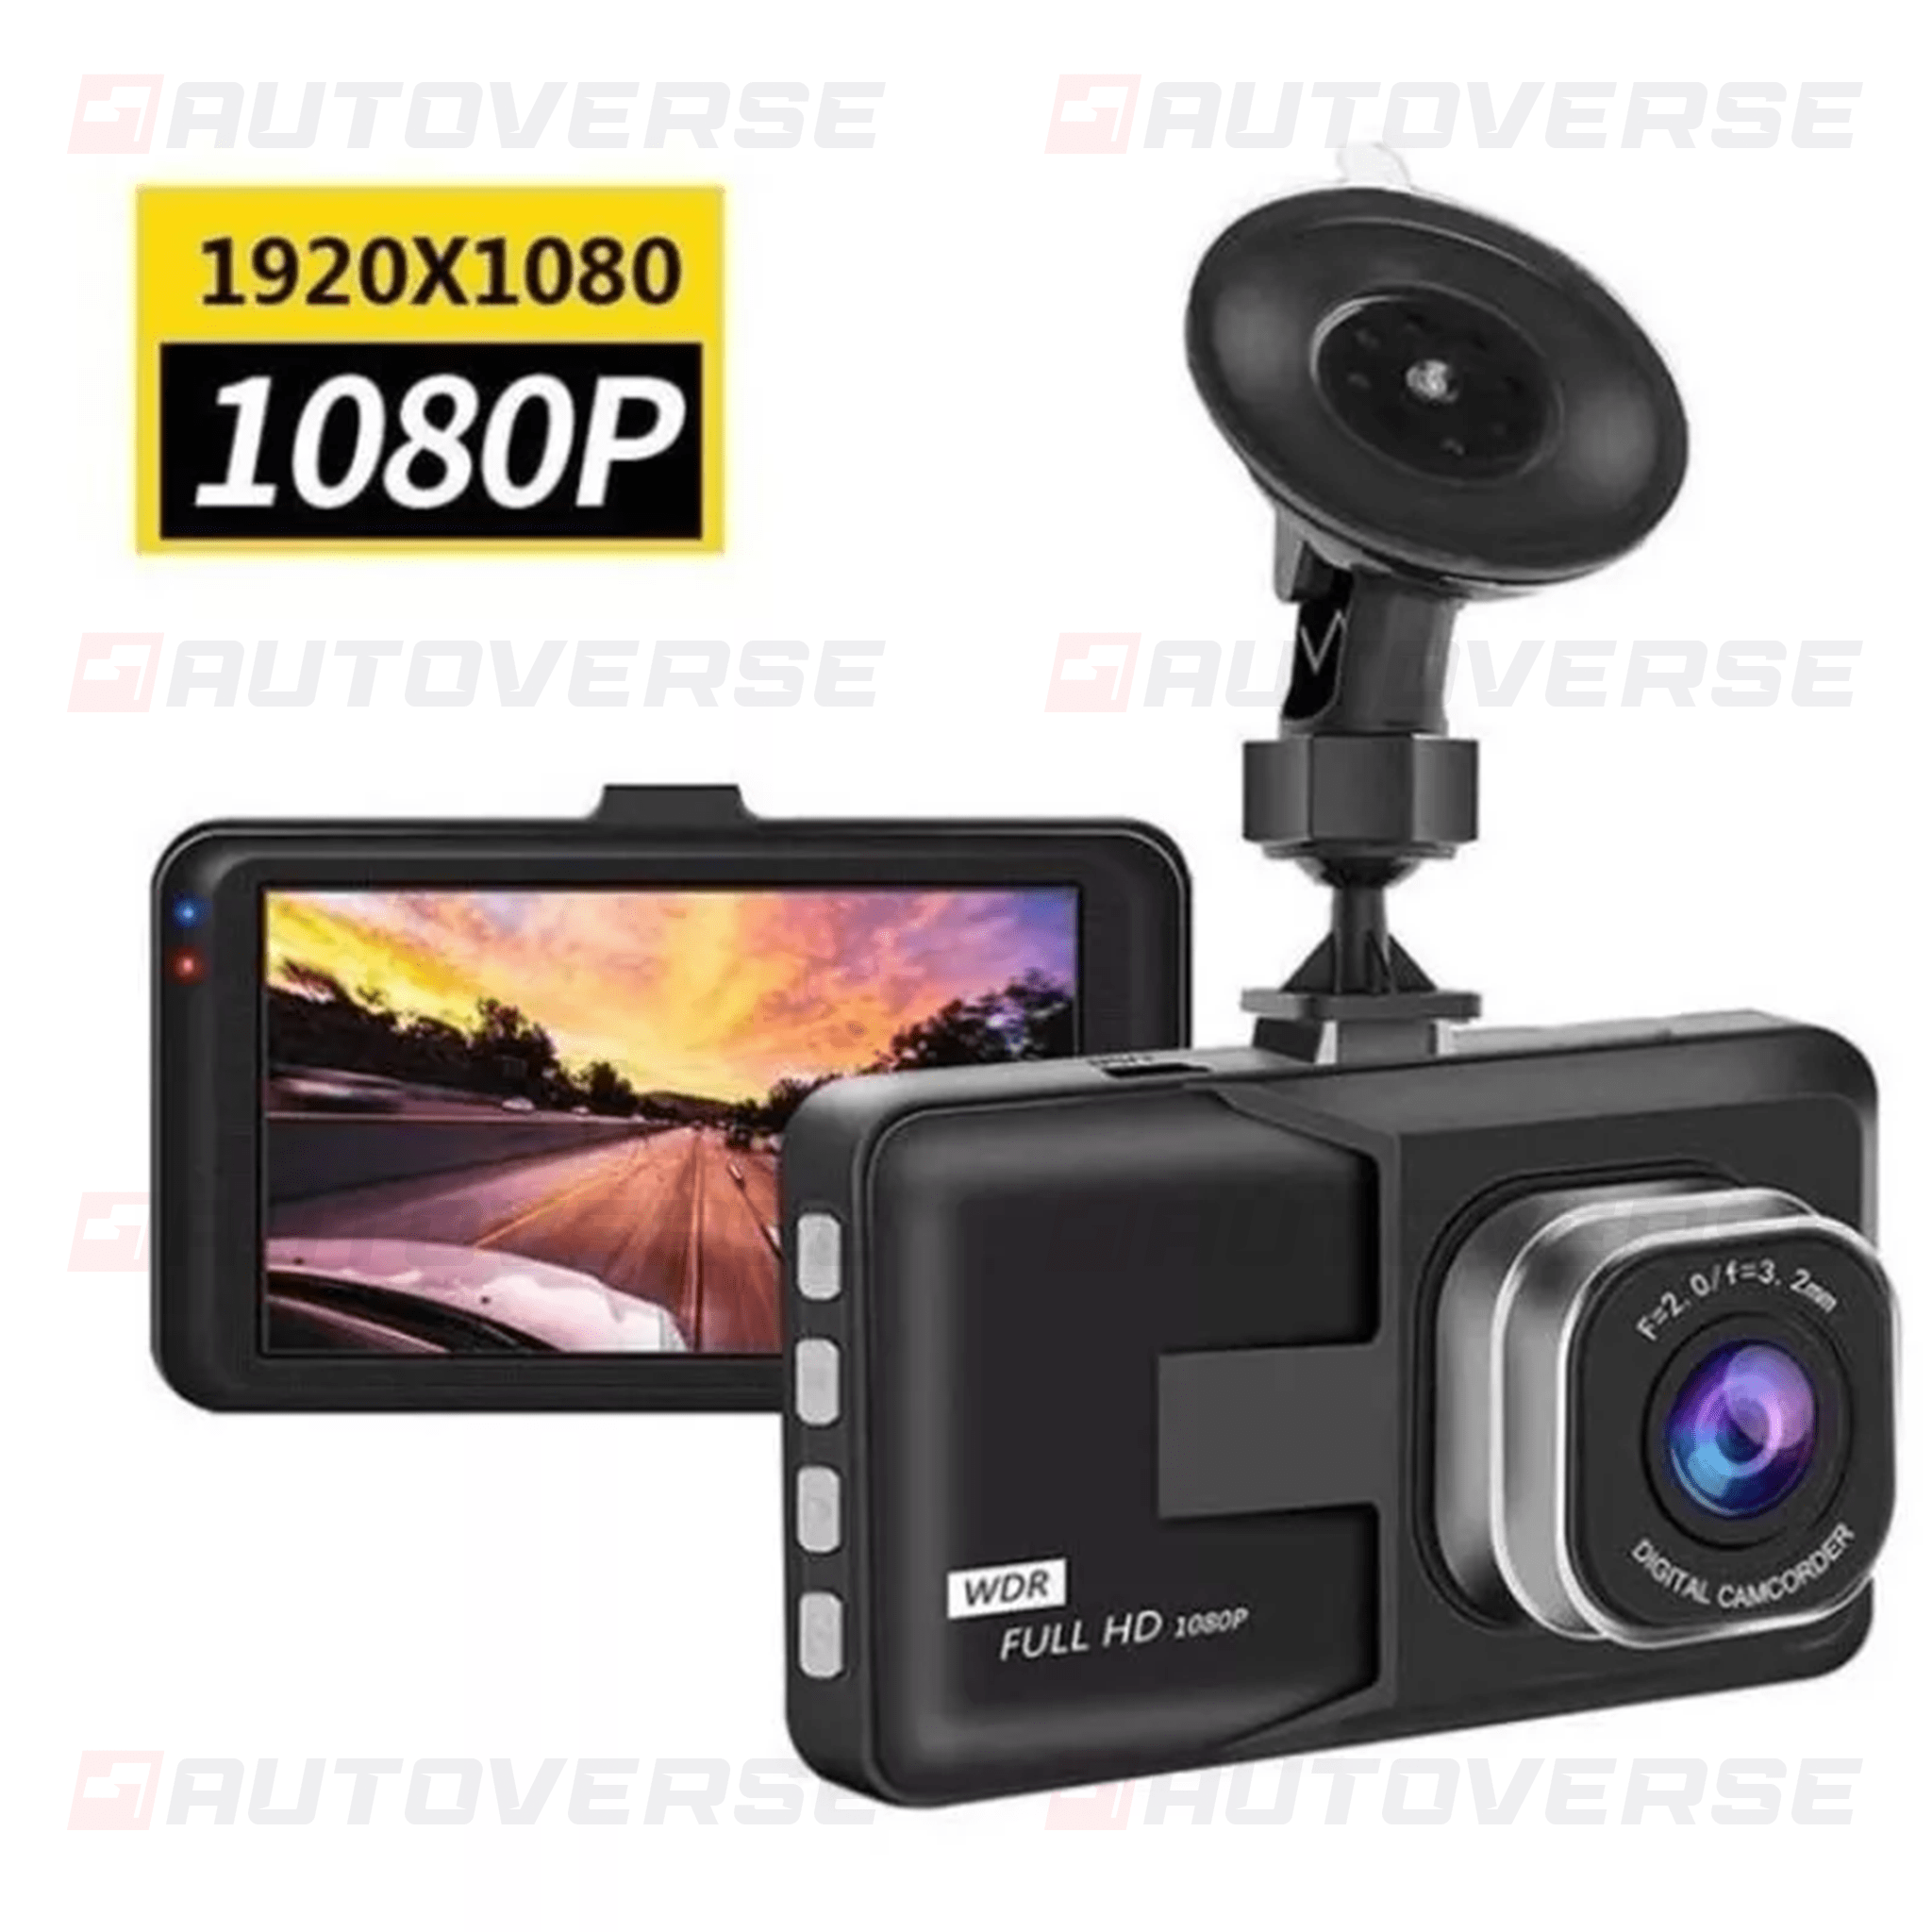 Enregistreur vidéo Full HD 1080P DashCam caméra DVR de voiture